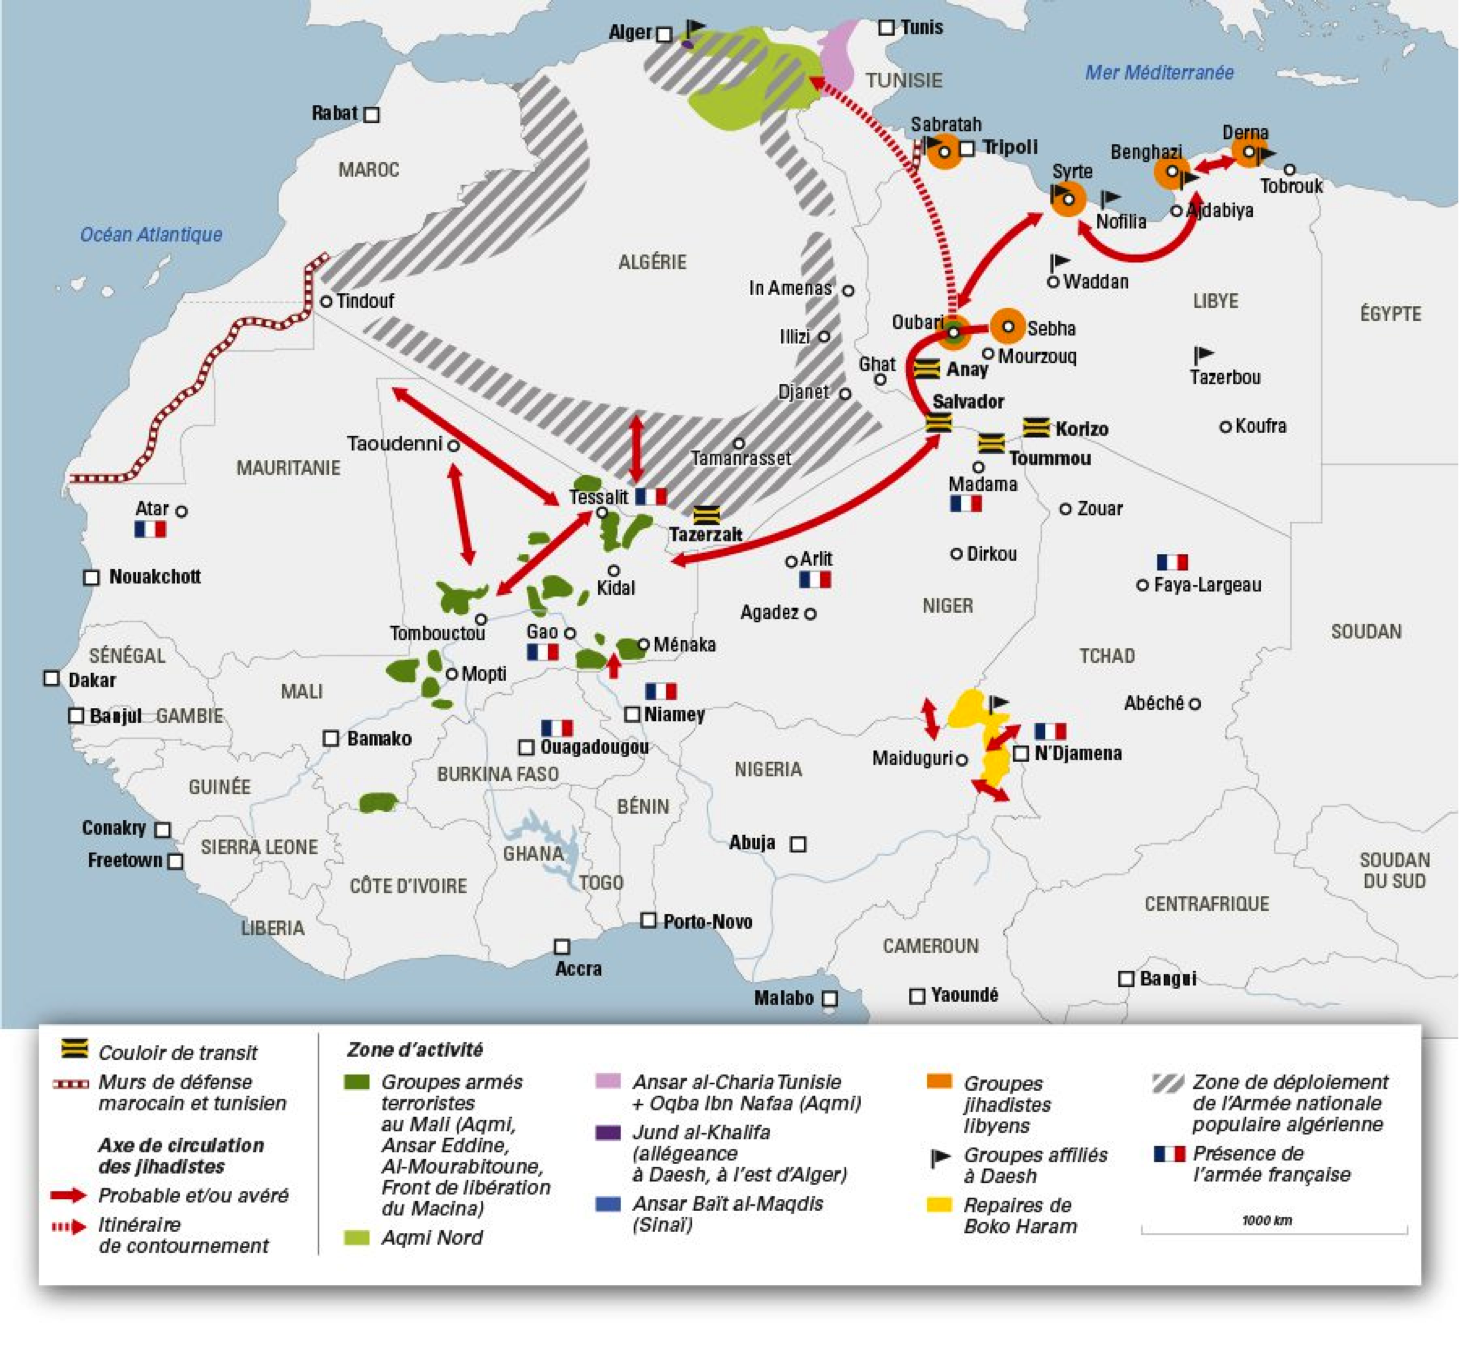 Mapa de la localización de los grupos yihadistas en África por Jeune Afrique